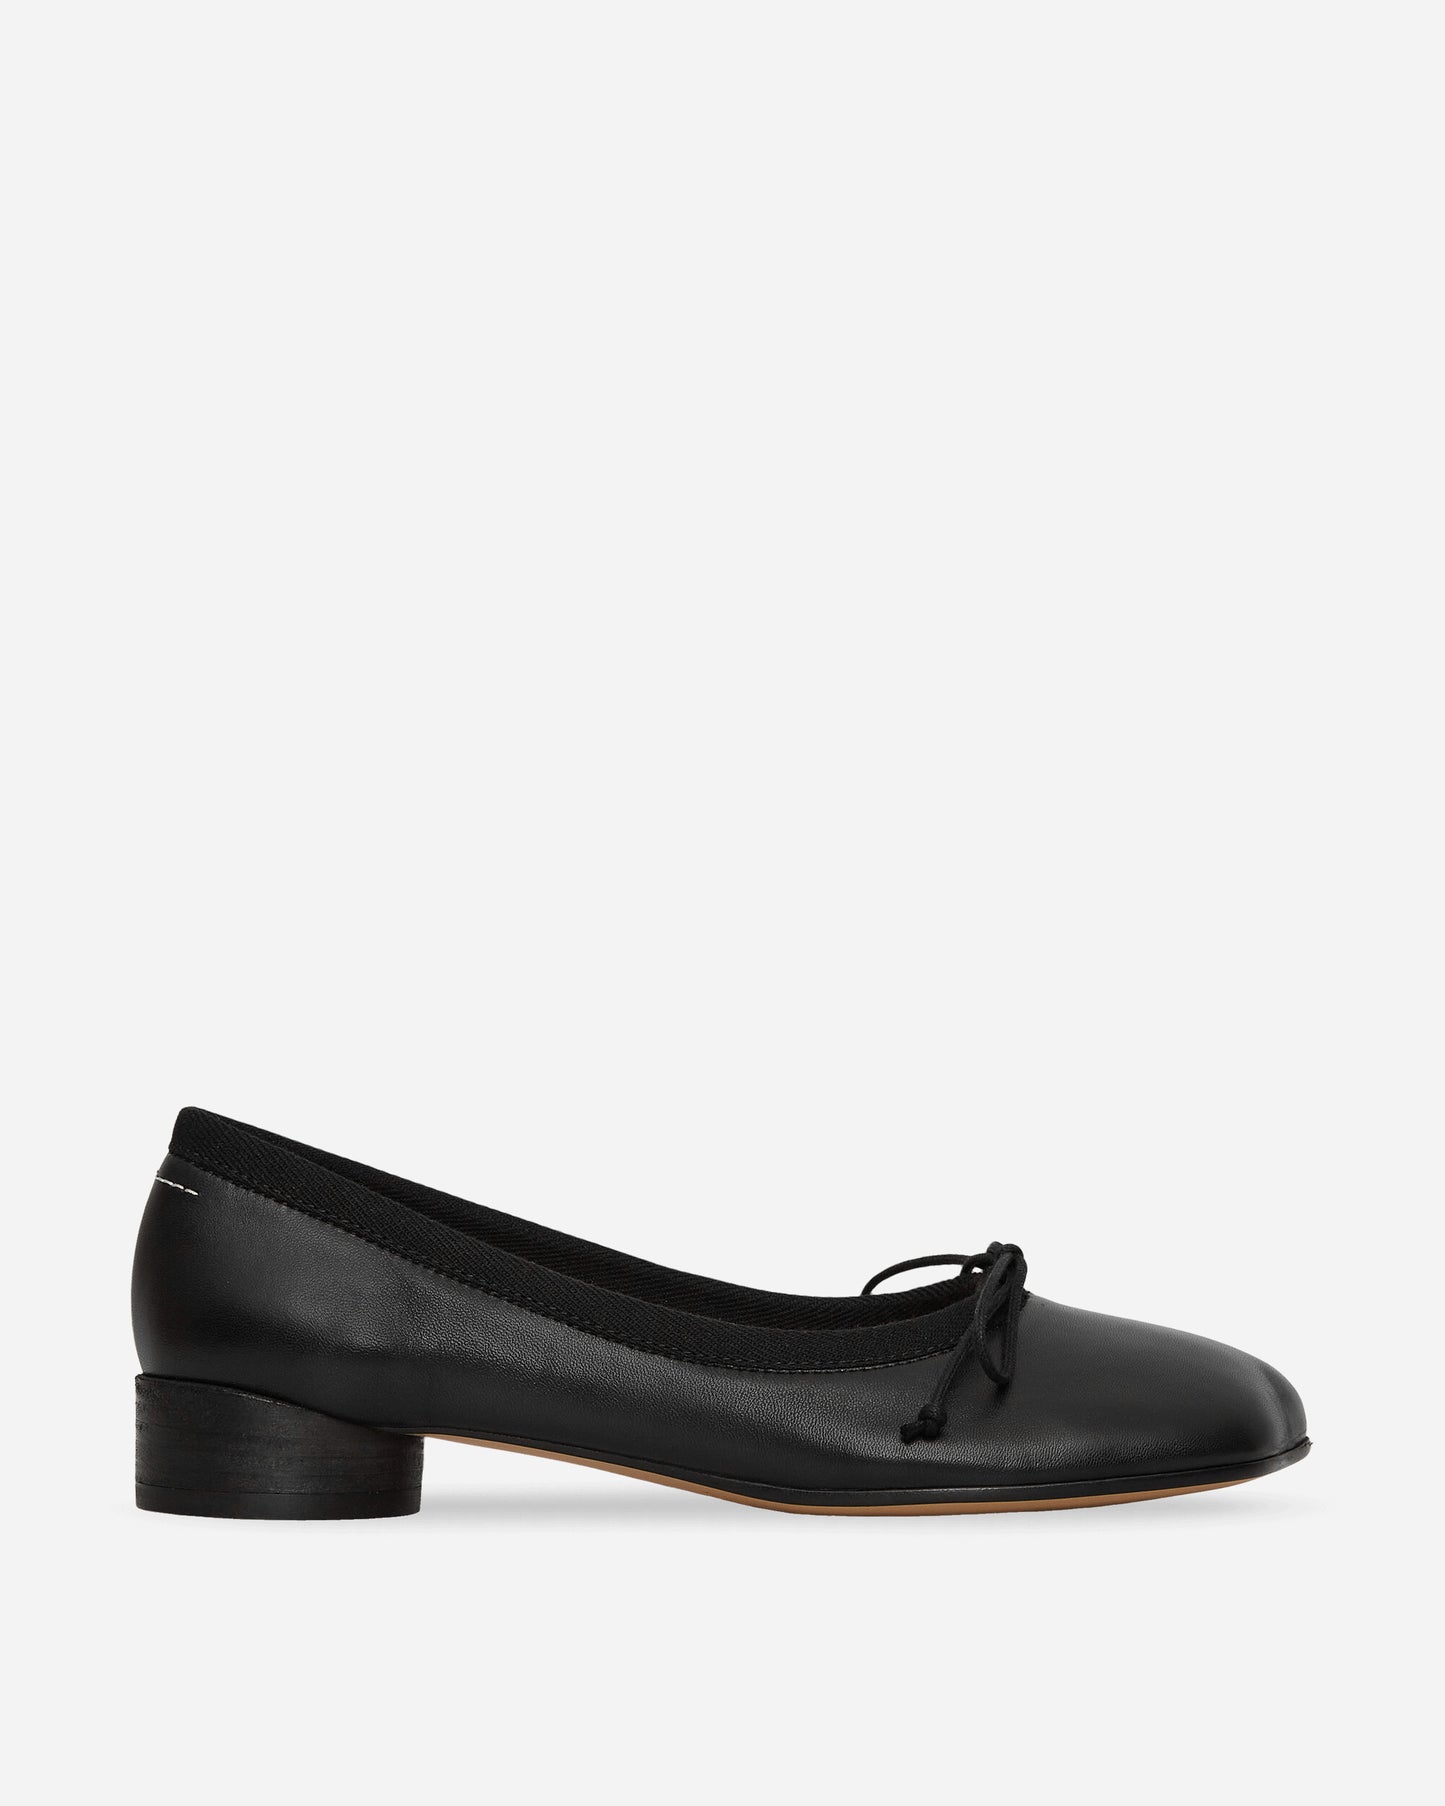 MM6 Maison Margiela Wmns Ballet Shoe Black Classic Shoes Flat Shoes S59WZ0096 T8013